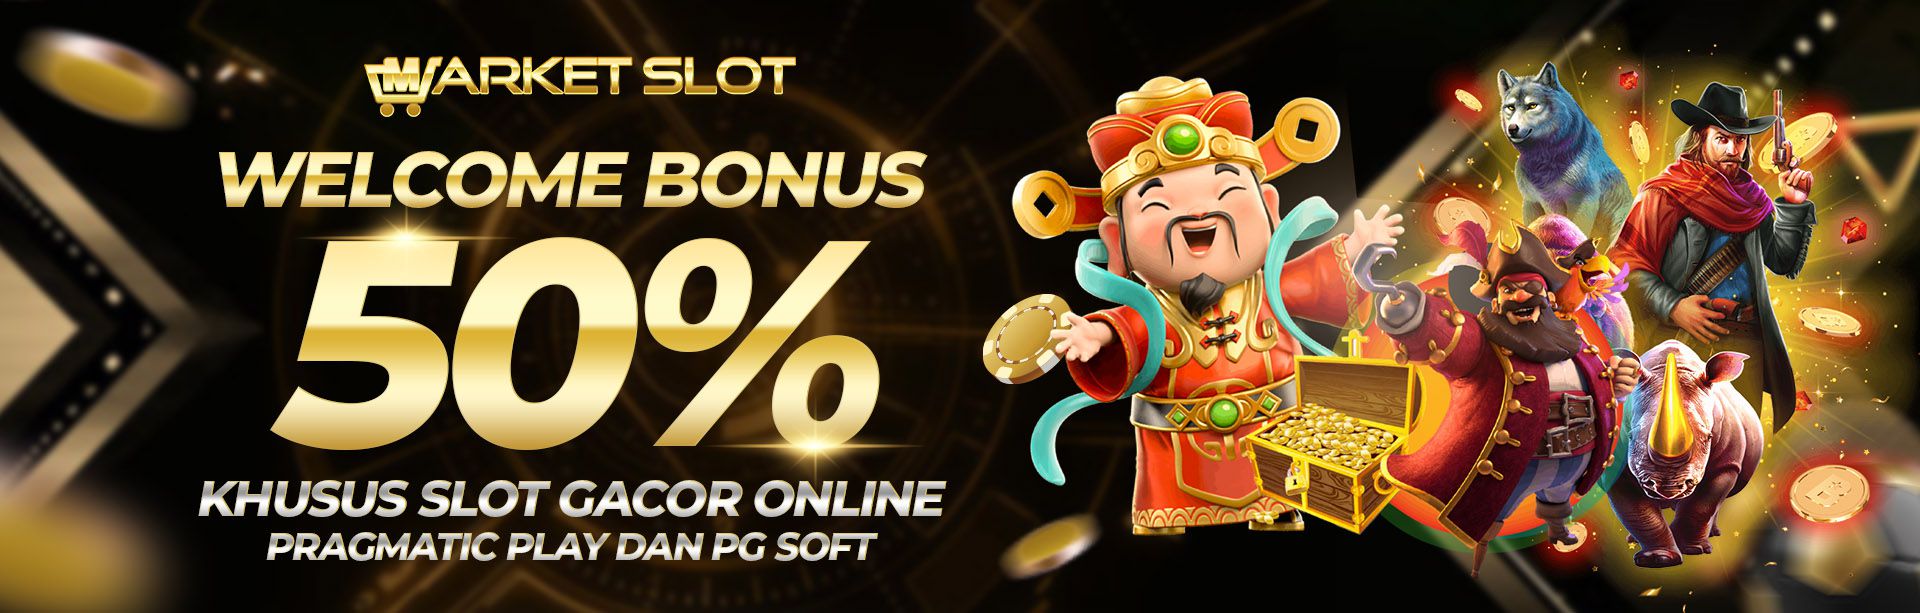 Welcome Bonus 50% Khusus Slot Gacor Online Pragmatic Play dan PG SOFT